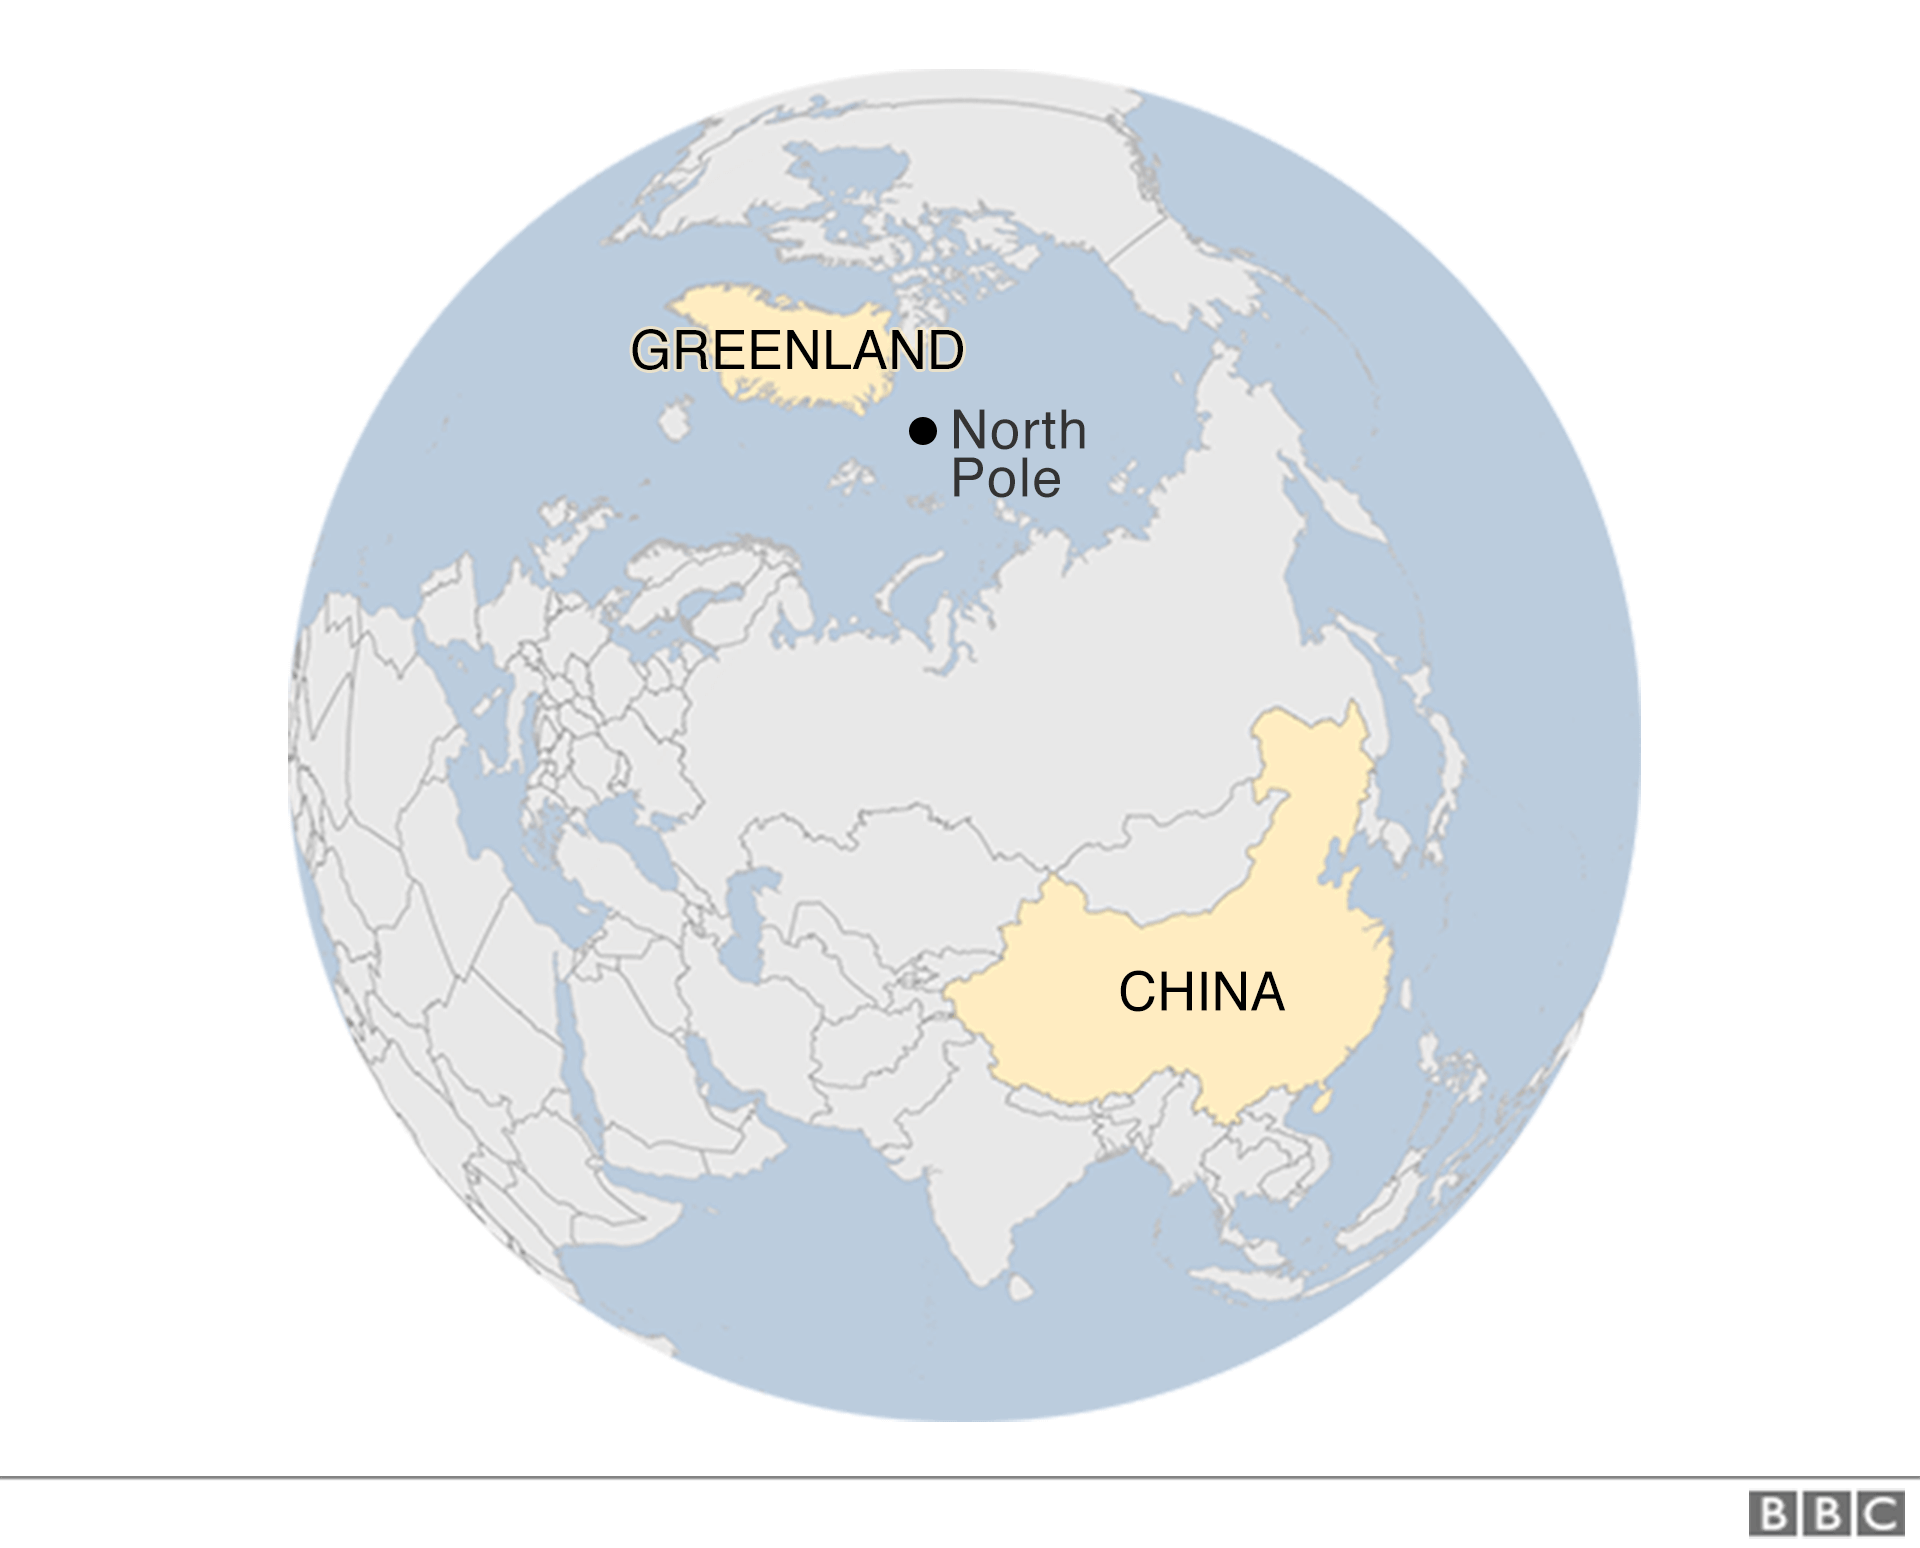 Карта видна на изогнутой поверхности земного шара - Гренландия отмечена наверху, также недалеко от Северного полюса, также отмечена - и местоположение Китая имеет две чрезвычайно большие нации Монголии и России между ним и полюсом | || Большая часть Гренландии покрыта постоянным льдом - огромной замерзшей пустыней